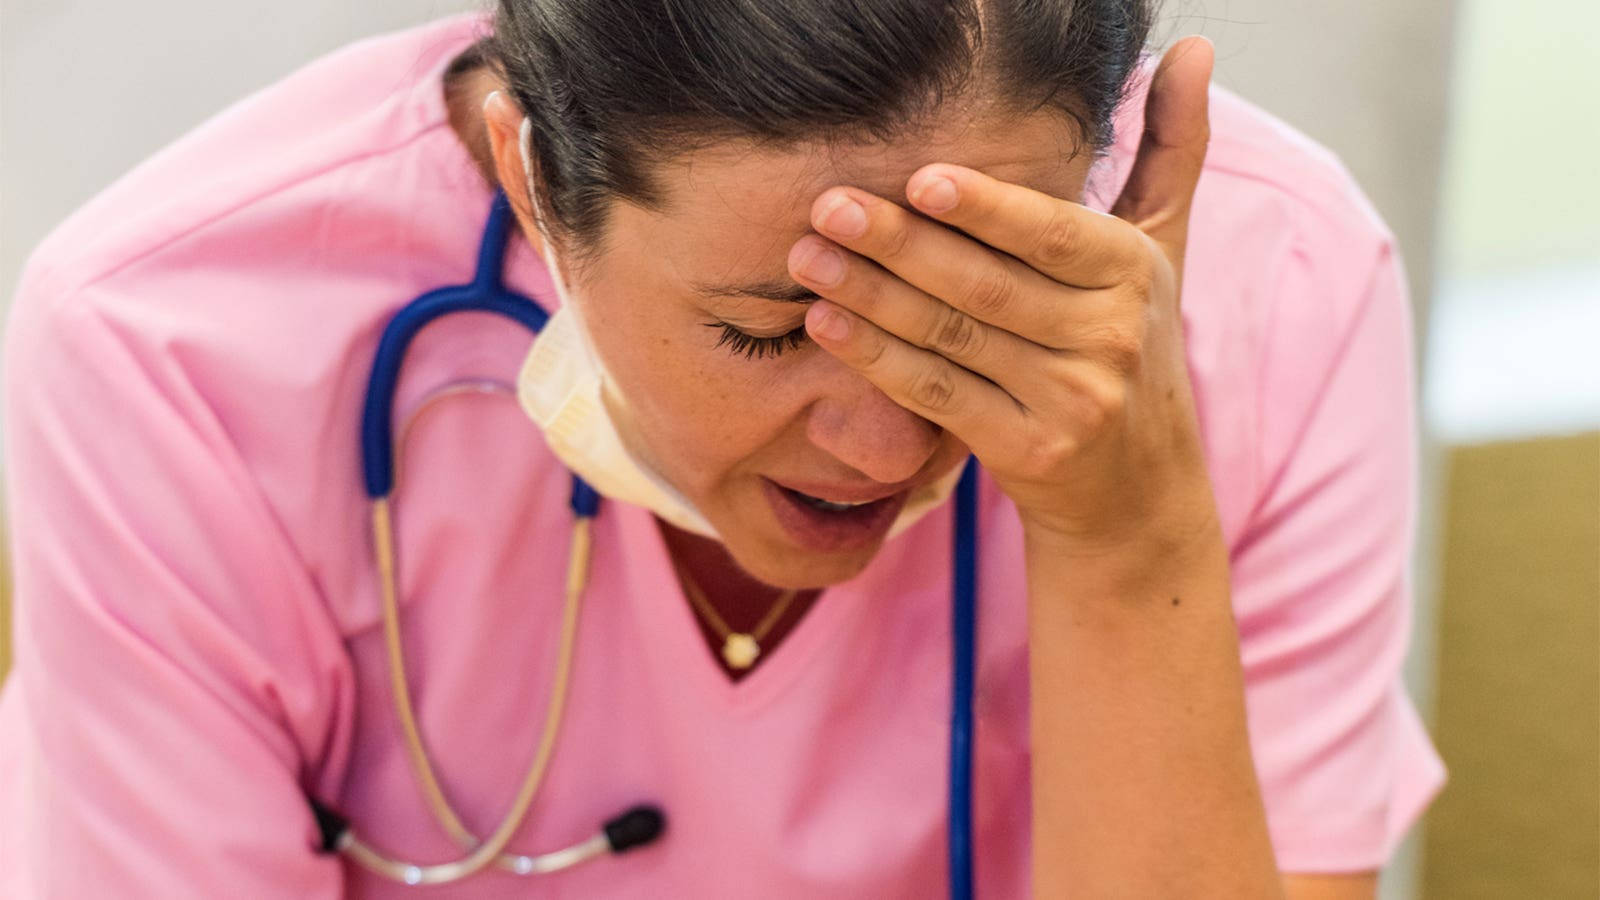 Titoloinfermiera Stressata In Lotta Contro Il Mal Di Testa Sfondo